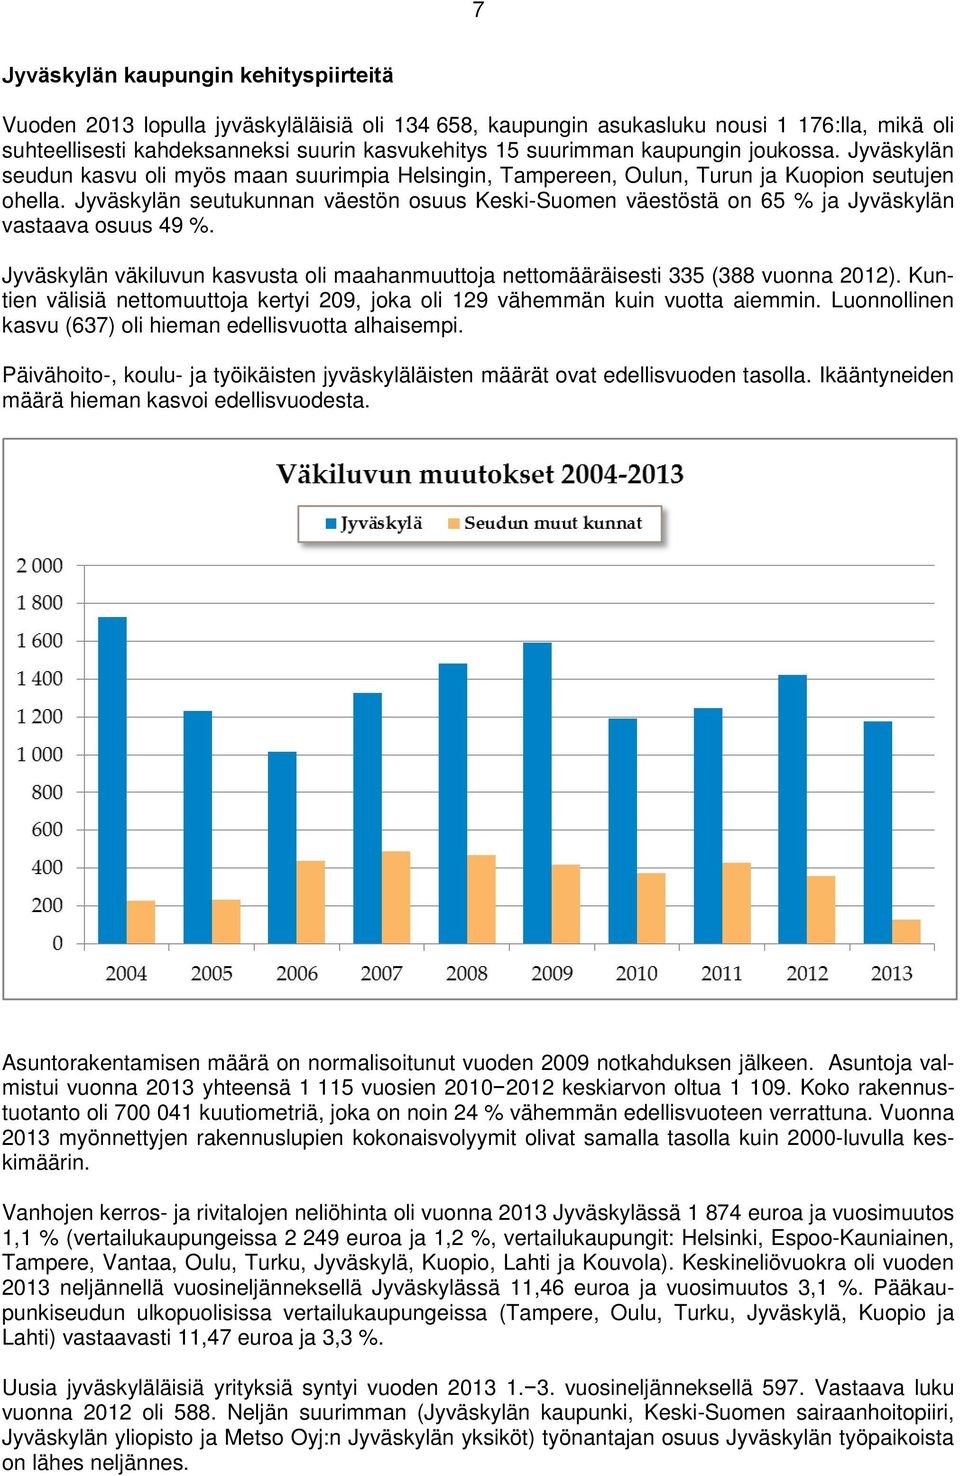 Jyväskylän seutukunnan väestön osuus Keski-Suomen väestöstä on 65 % ja Jyväskylän vastaava osuus 49 %. Jyväskylän väkiluvun kasvusta oli maahanmuuttoja nettomääräisesti 335 (388 vuonna 2012).